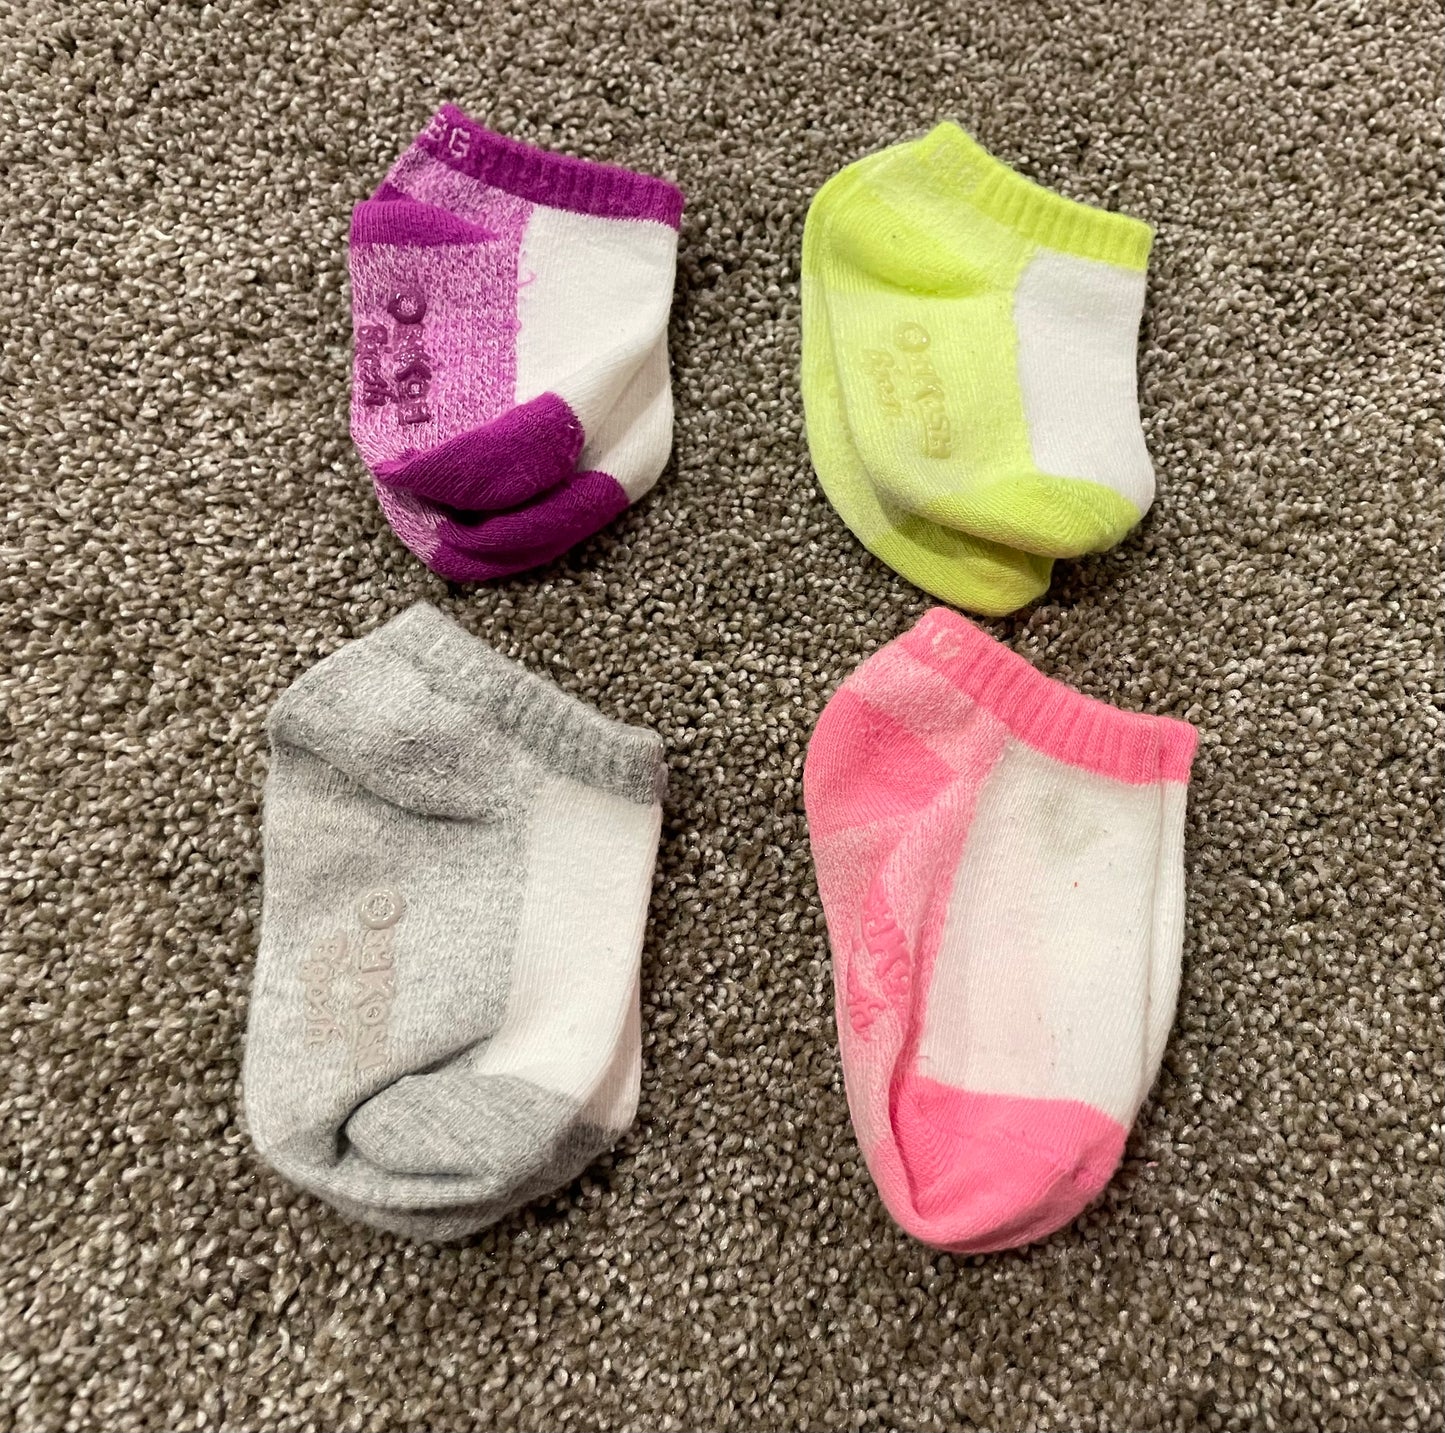 Girls 2T socks